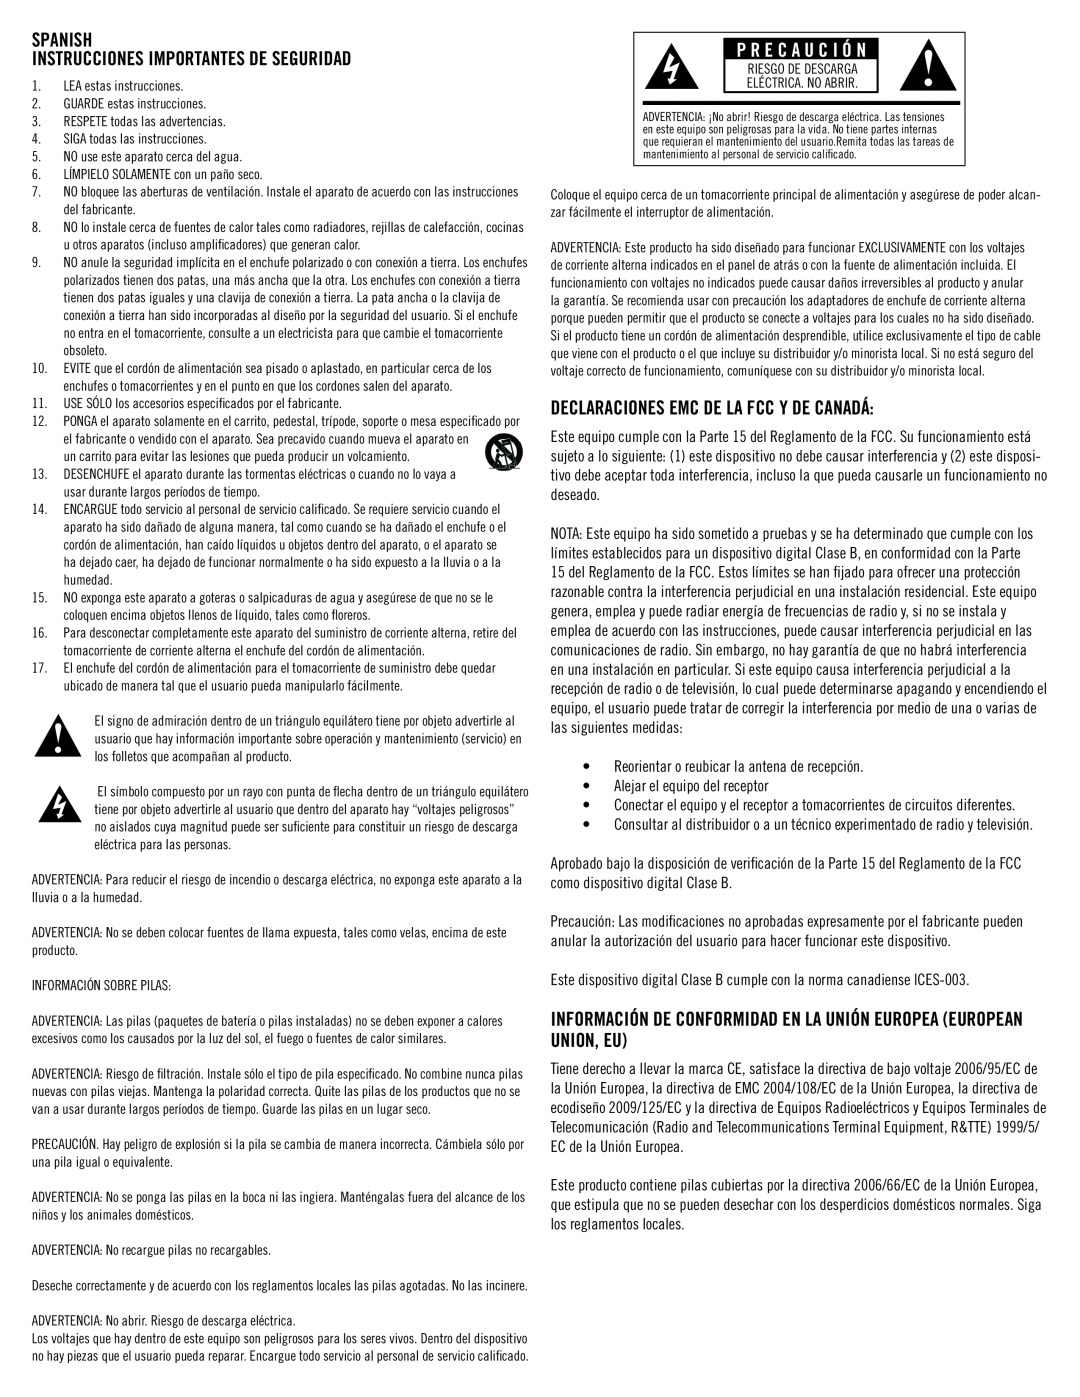 Klipsch SB 1 SPANISH Instrucciones importantes de seguridad, P R E C A U C I Ó N, Declaraciones Emc De La Fcc Y De Canadá 